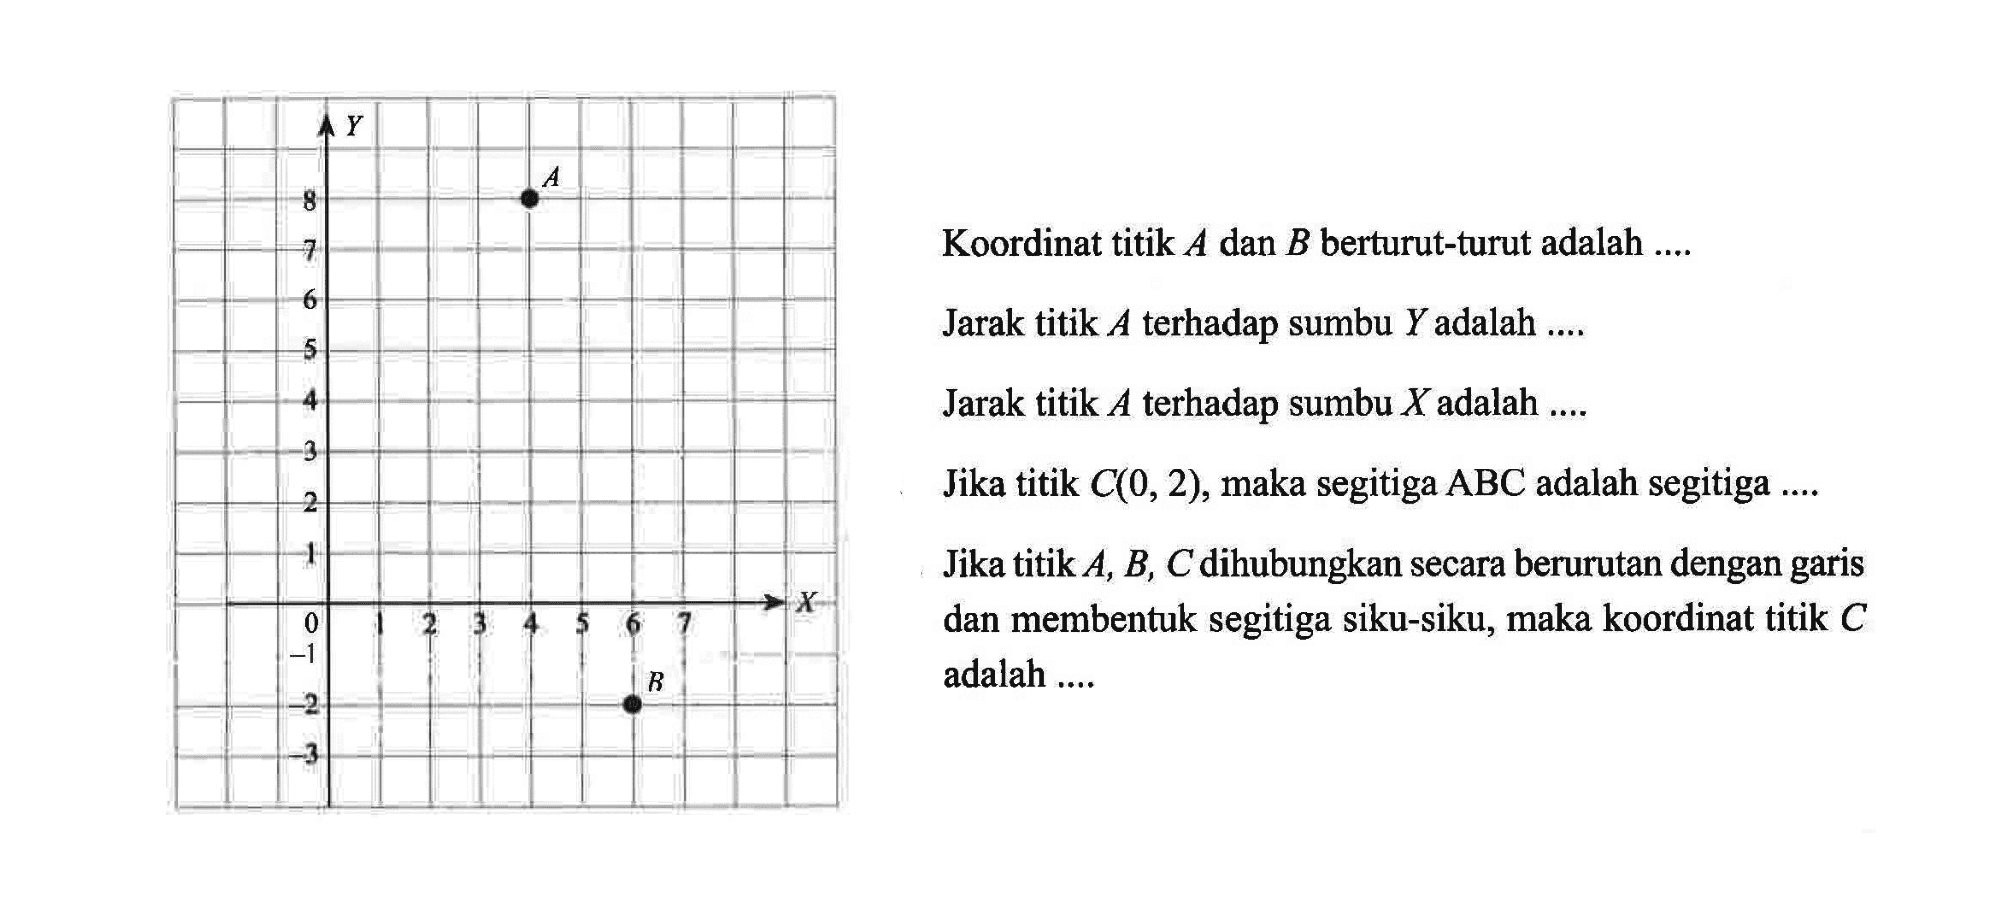 Koordinat titik A dan B berturut-turut adalah.... Jarak titik A terhadap sumbu Y adalah.... Jarak titik A terhadap sumbu X adalah .... Jika titik C(0, 2), maka segitiga ABC adalah segitiga .... Jika titik A, B, C dihubungkan secara berurutan dengan garis dan membentuk segitiga siku-siku, maka koordinat titik C adalah....